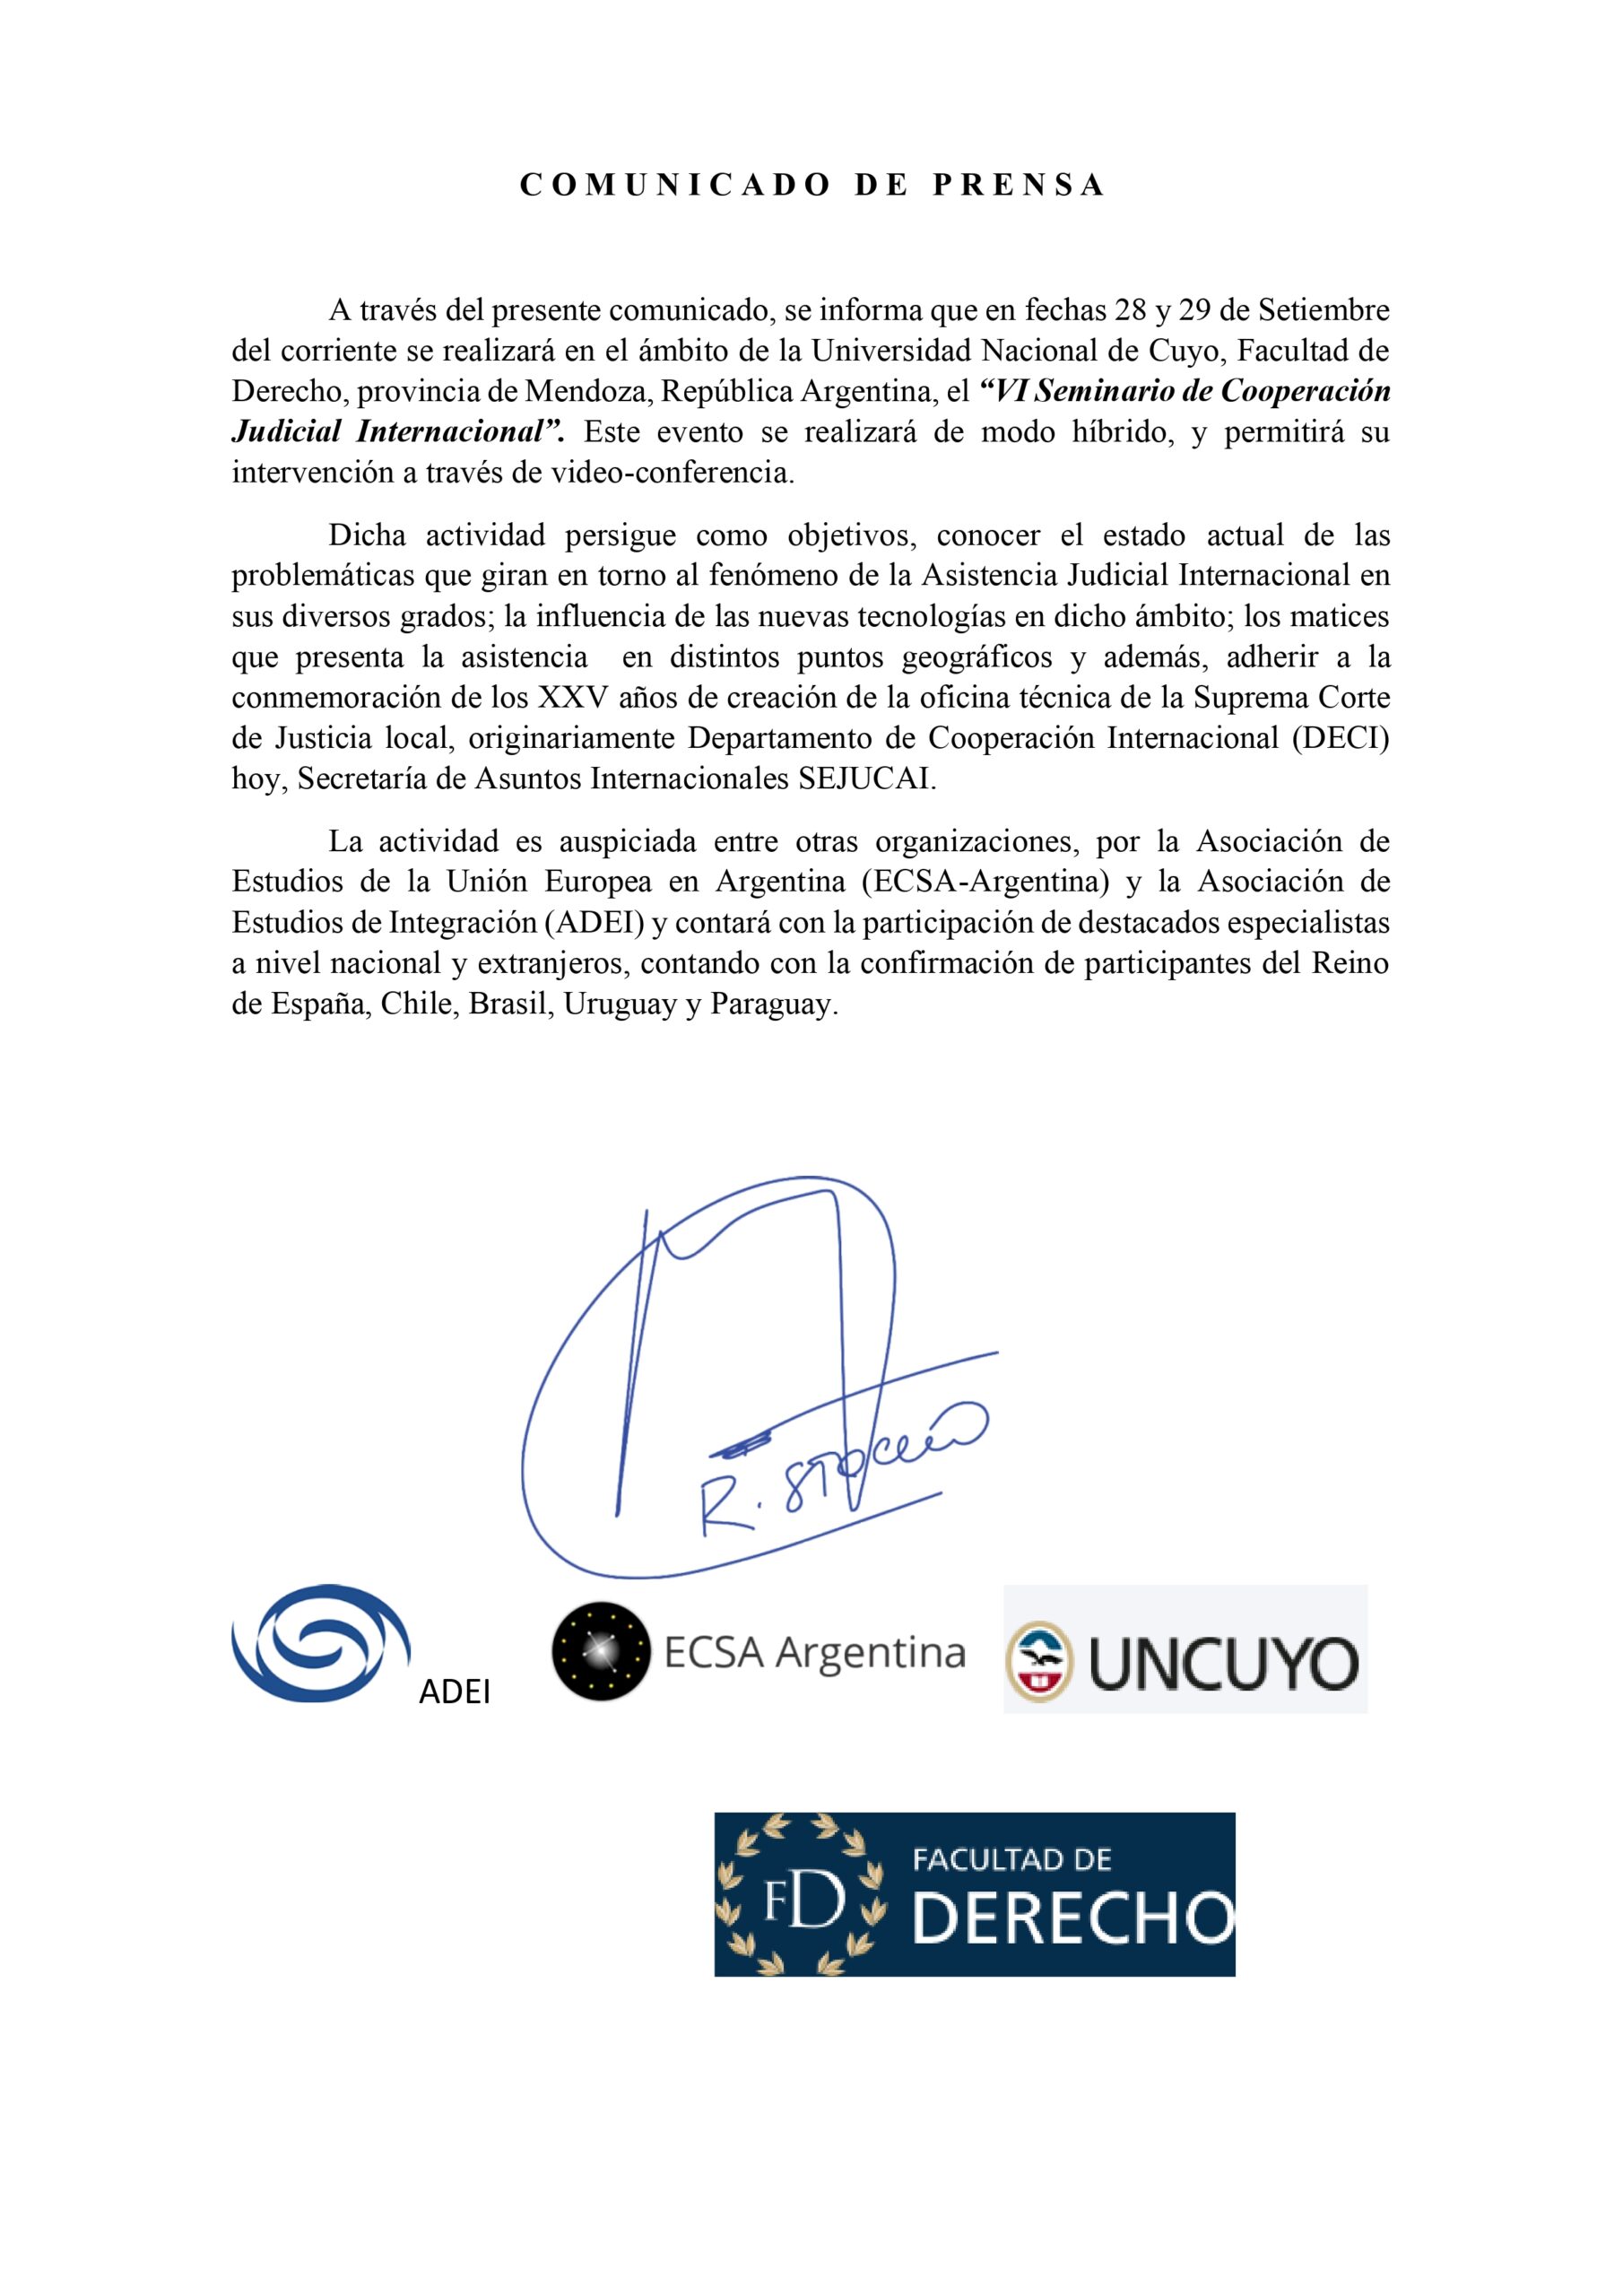 VI Seminario de Cooperación Judicial Internacional – Universidad Nacional de Cuyo, Facultad de Derecho, provincia de Mendoza, Argentina